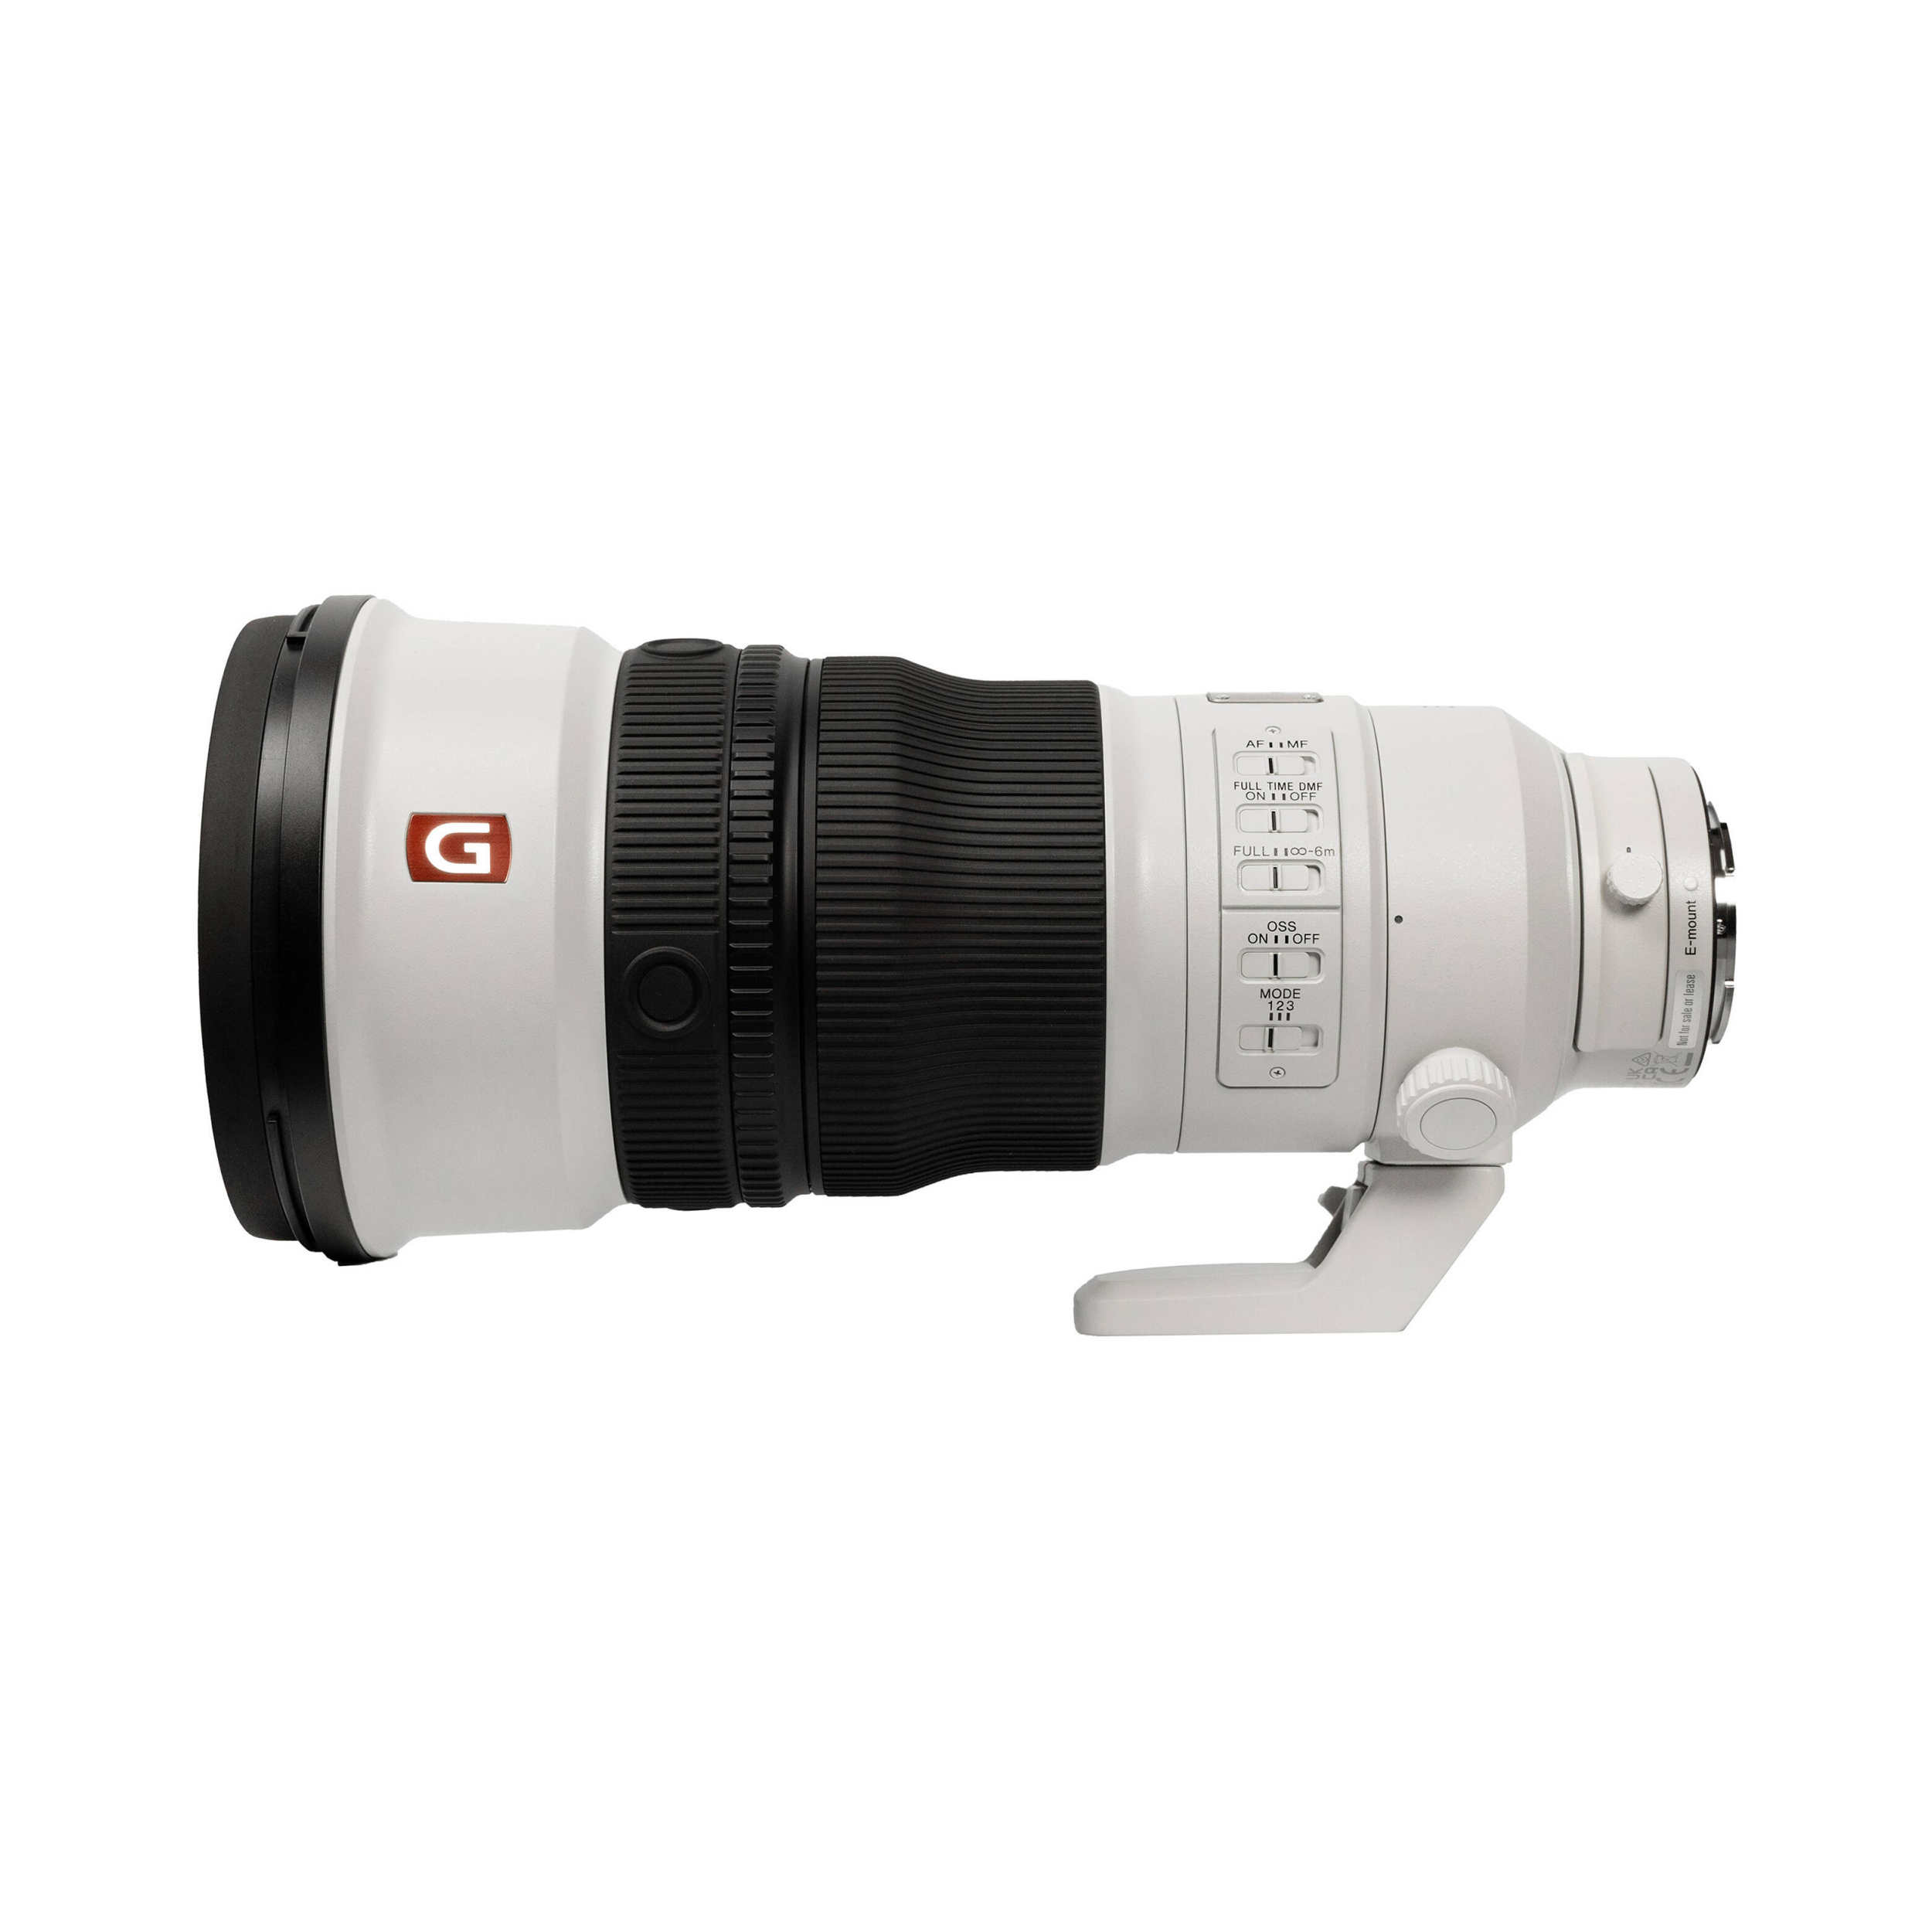 Sony FE 300mm f/2.8 GM OSS Lens (Sony E) - 20% Preorder Deposit